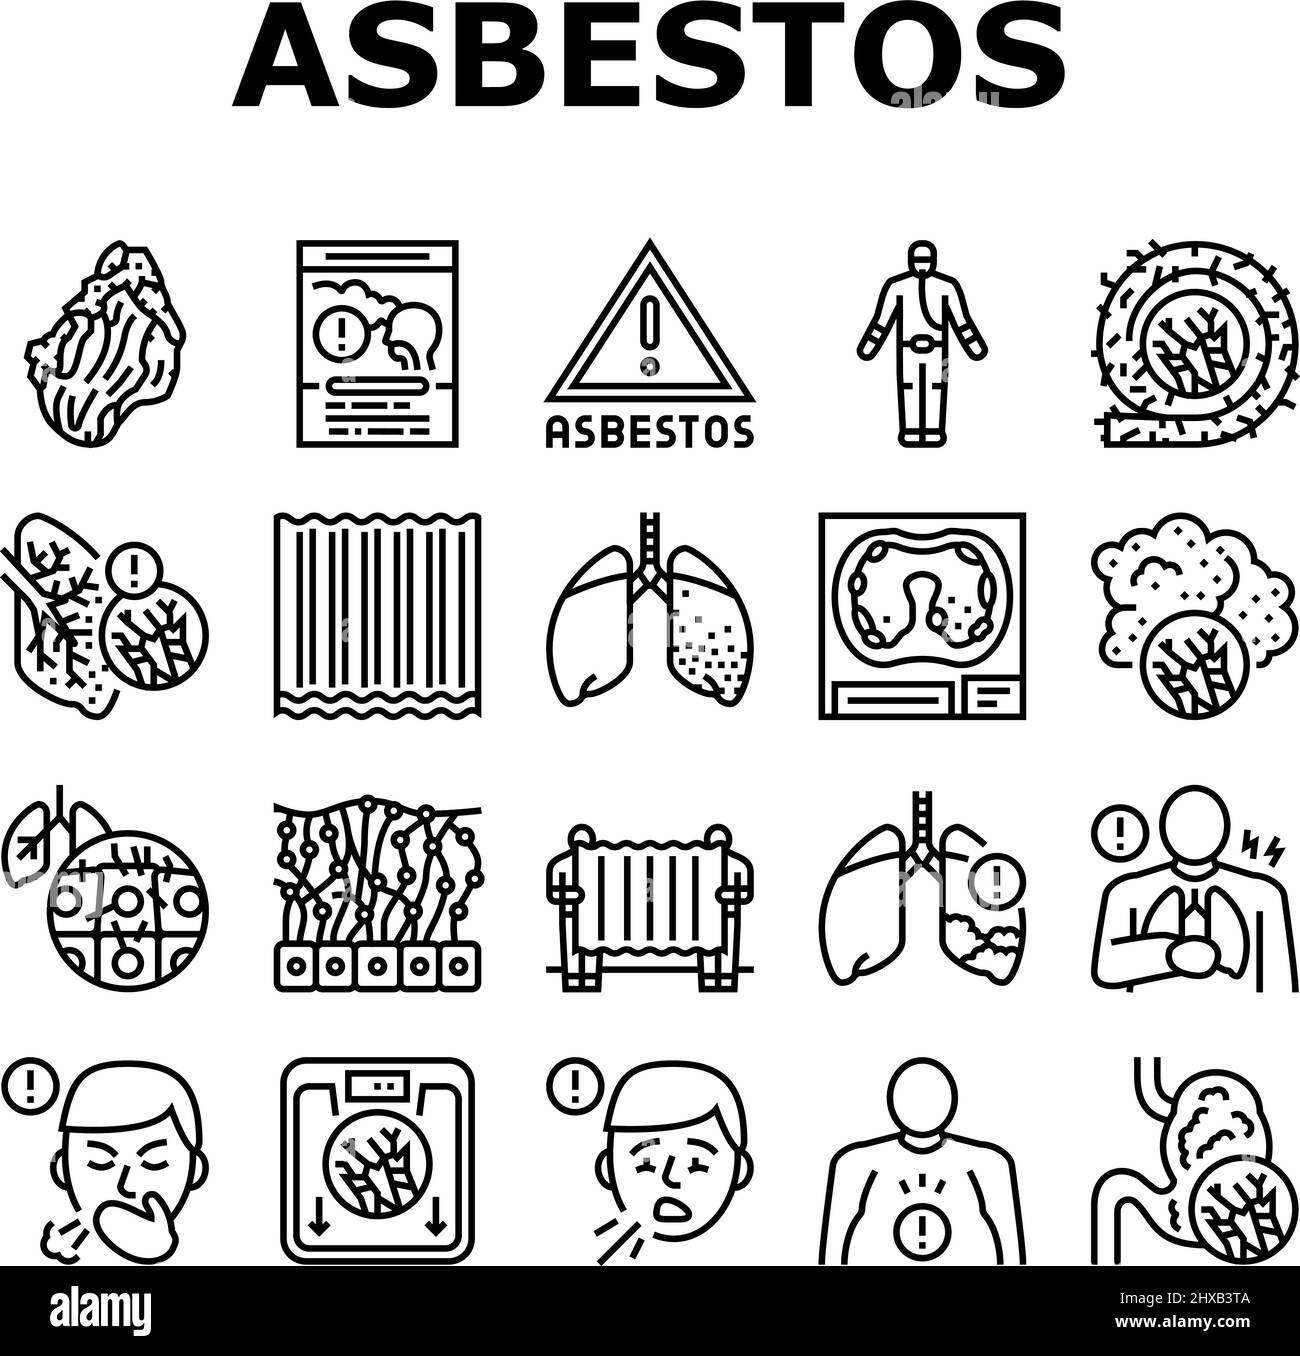 Asbestmaterial Und Problemsymbole Setzen Vektor. Asbest Removal Service Und Schutz, Lunge Und Bauchschmerzen Mesothelioma Health Disease, Schmerzhaft Stock Vektor